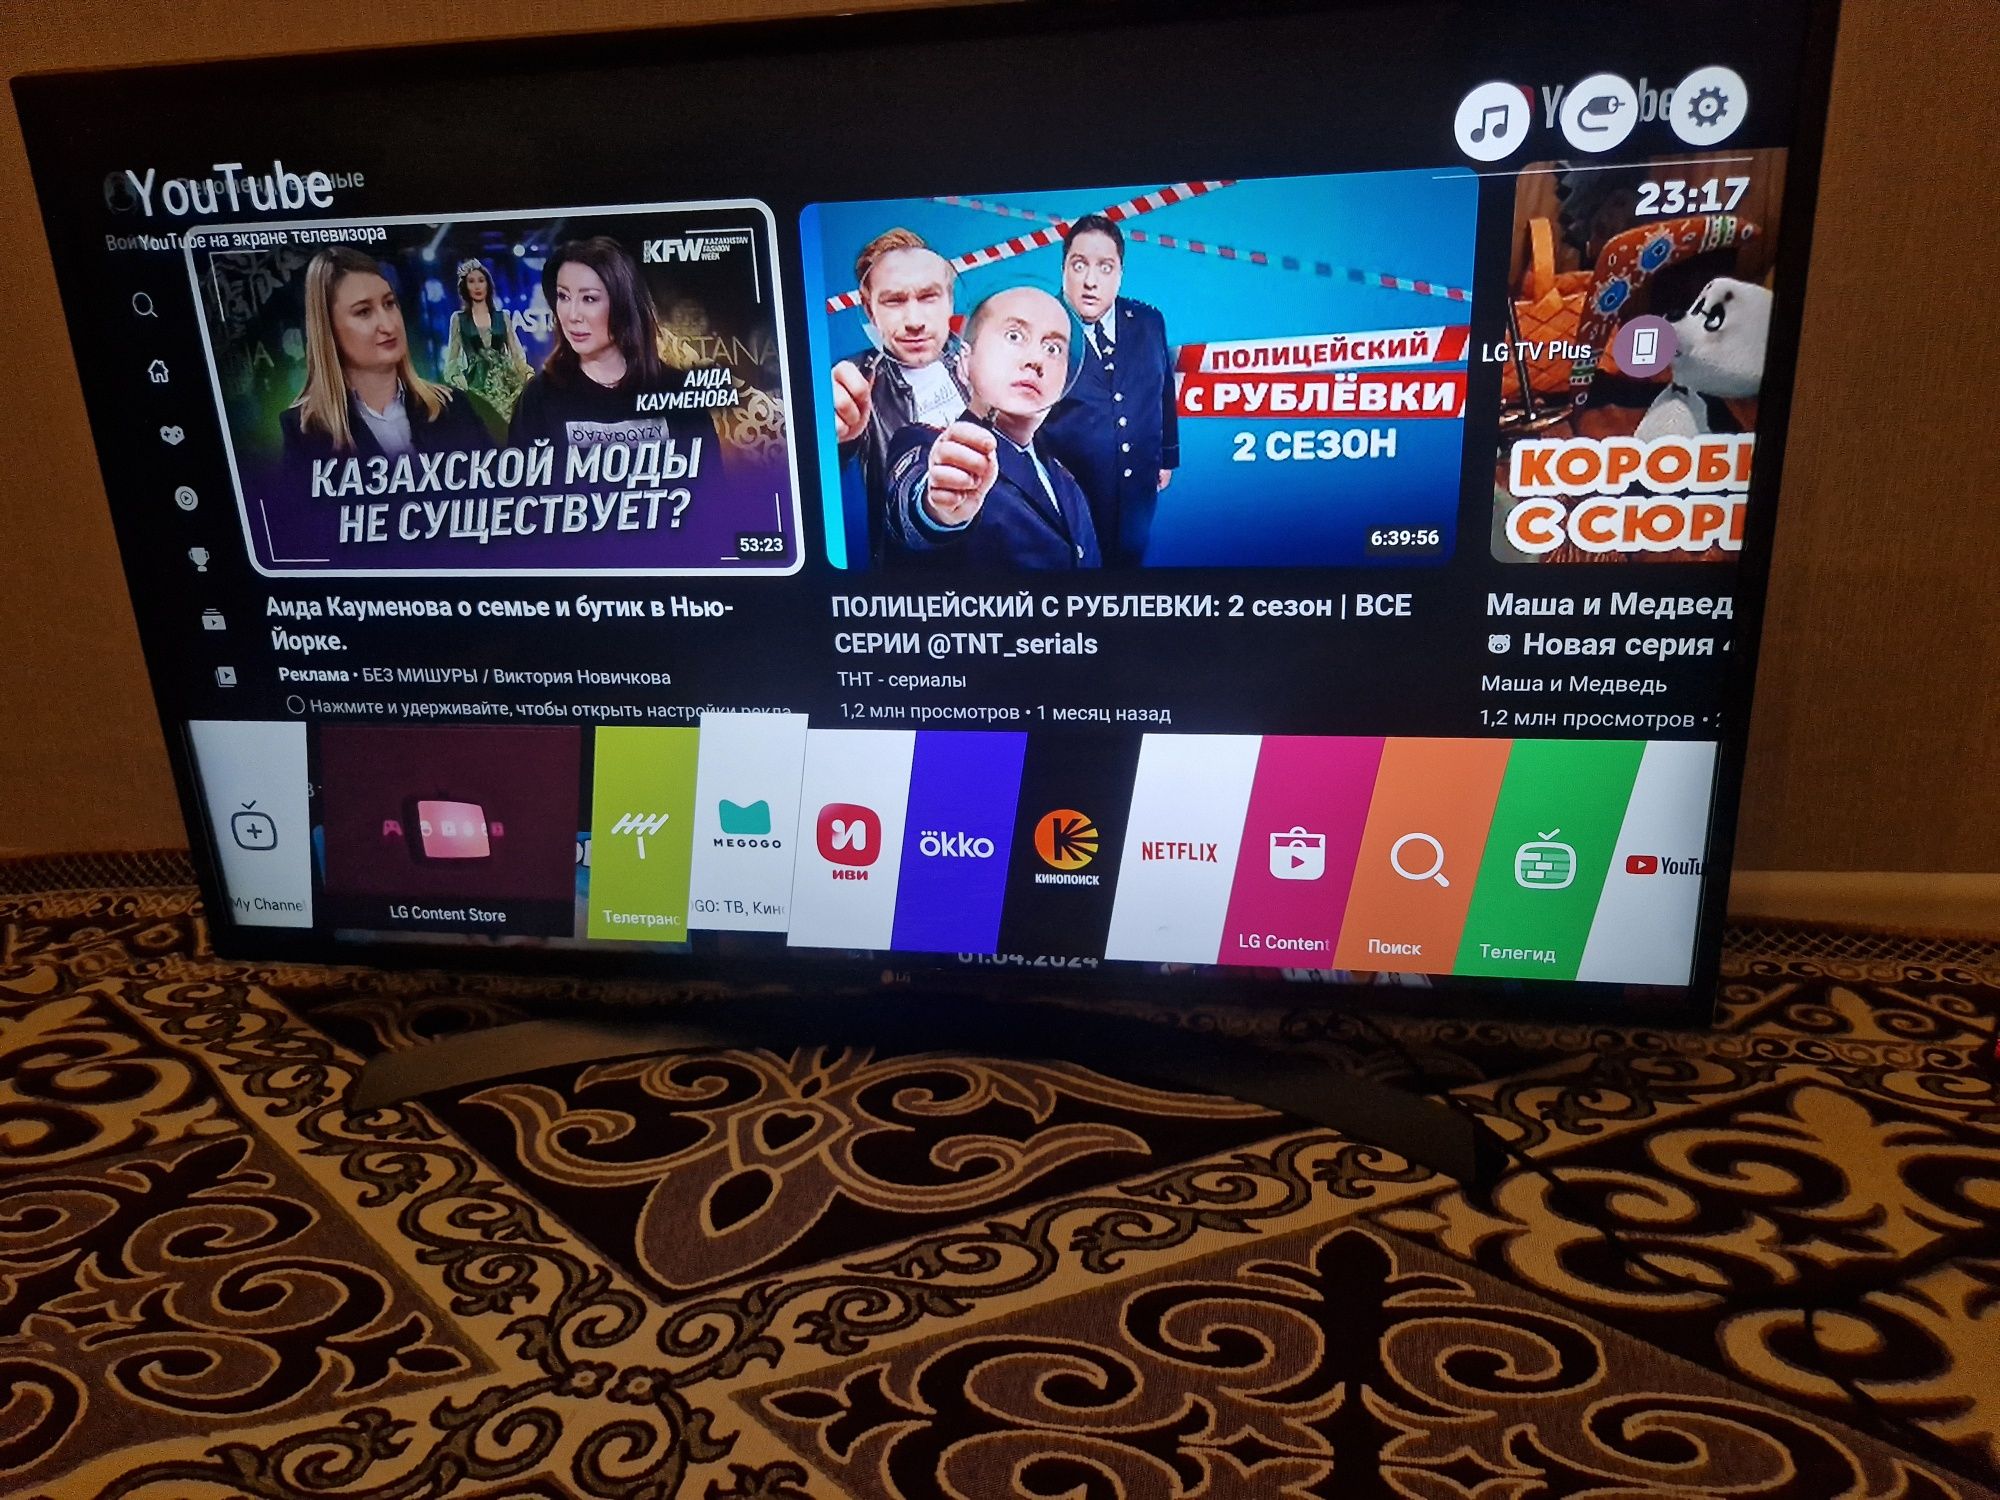 UltraHD 4K Smart Tv LG WebOS 43дюйма(110см) / BTV !!!